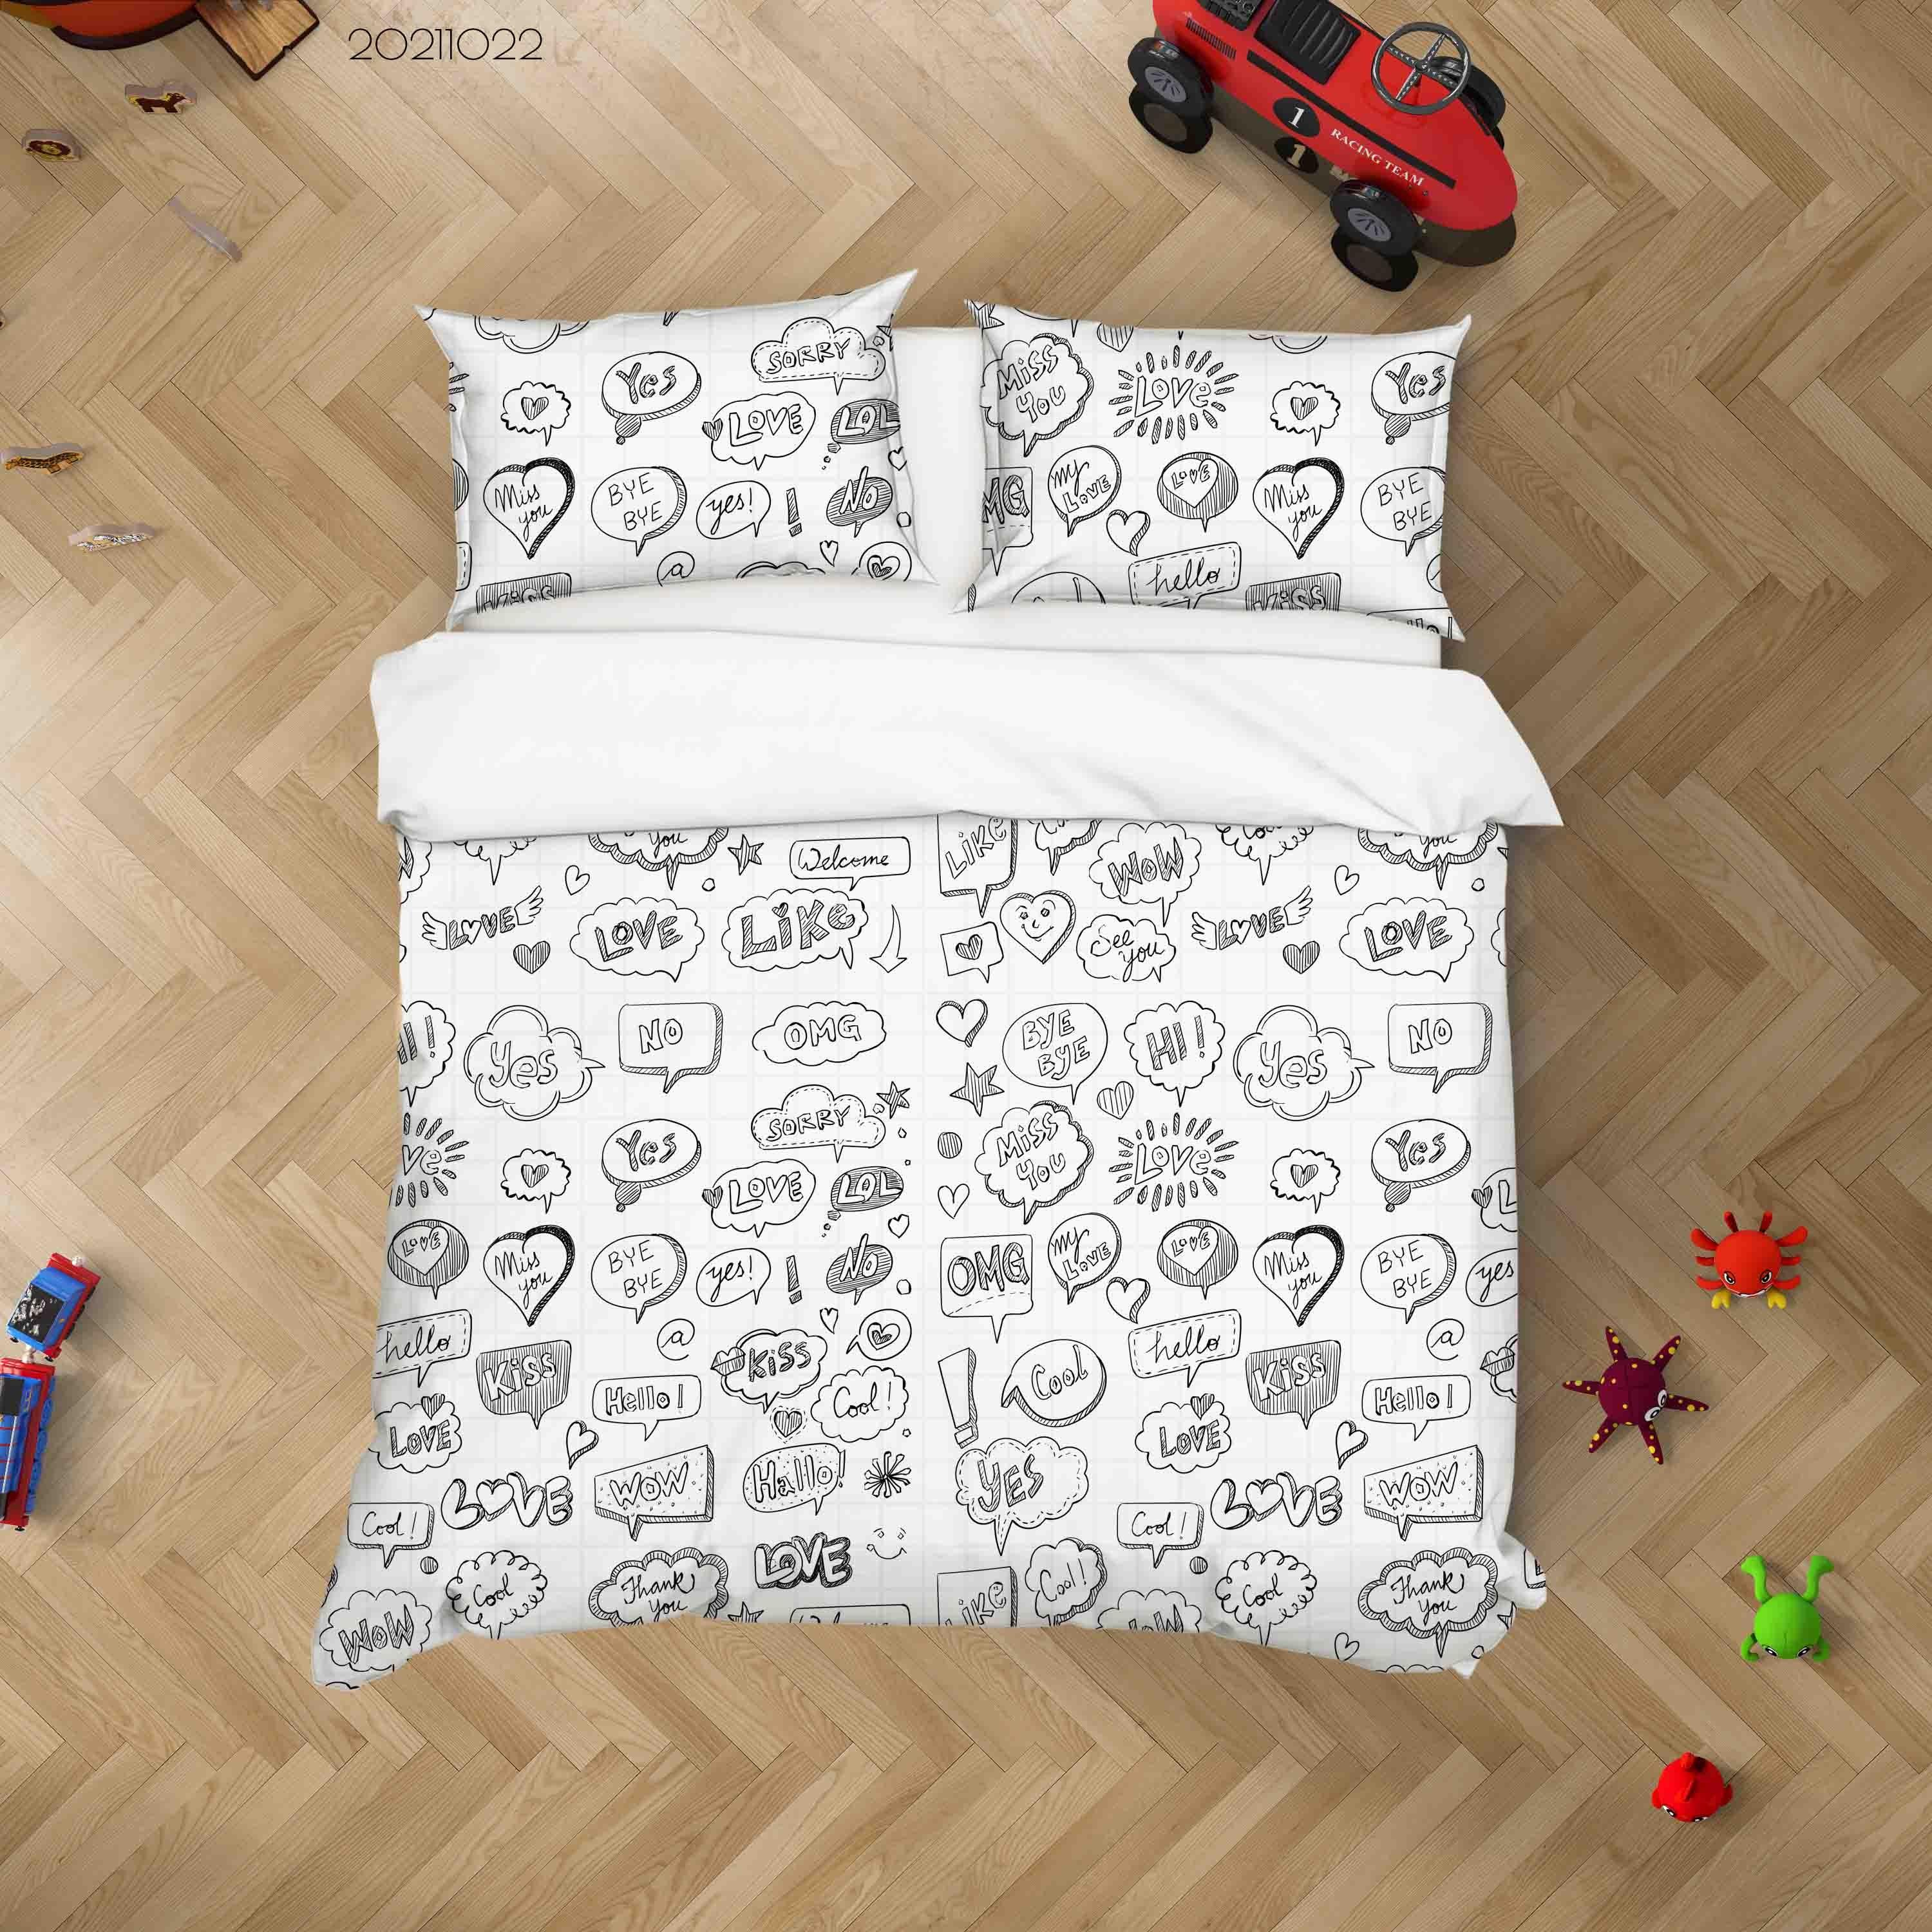 3D Abstract Bubble Language Graffiti Quilt Cover Set Bedding Set Duvet Cover Pillowcases 34- Jess Art Decoration